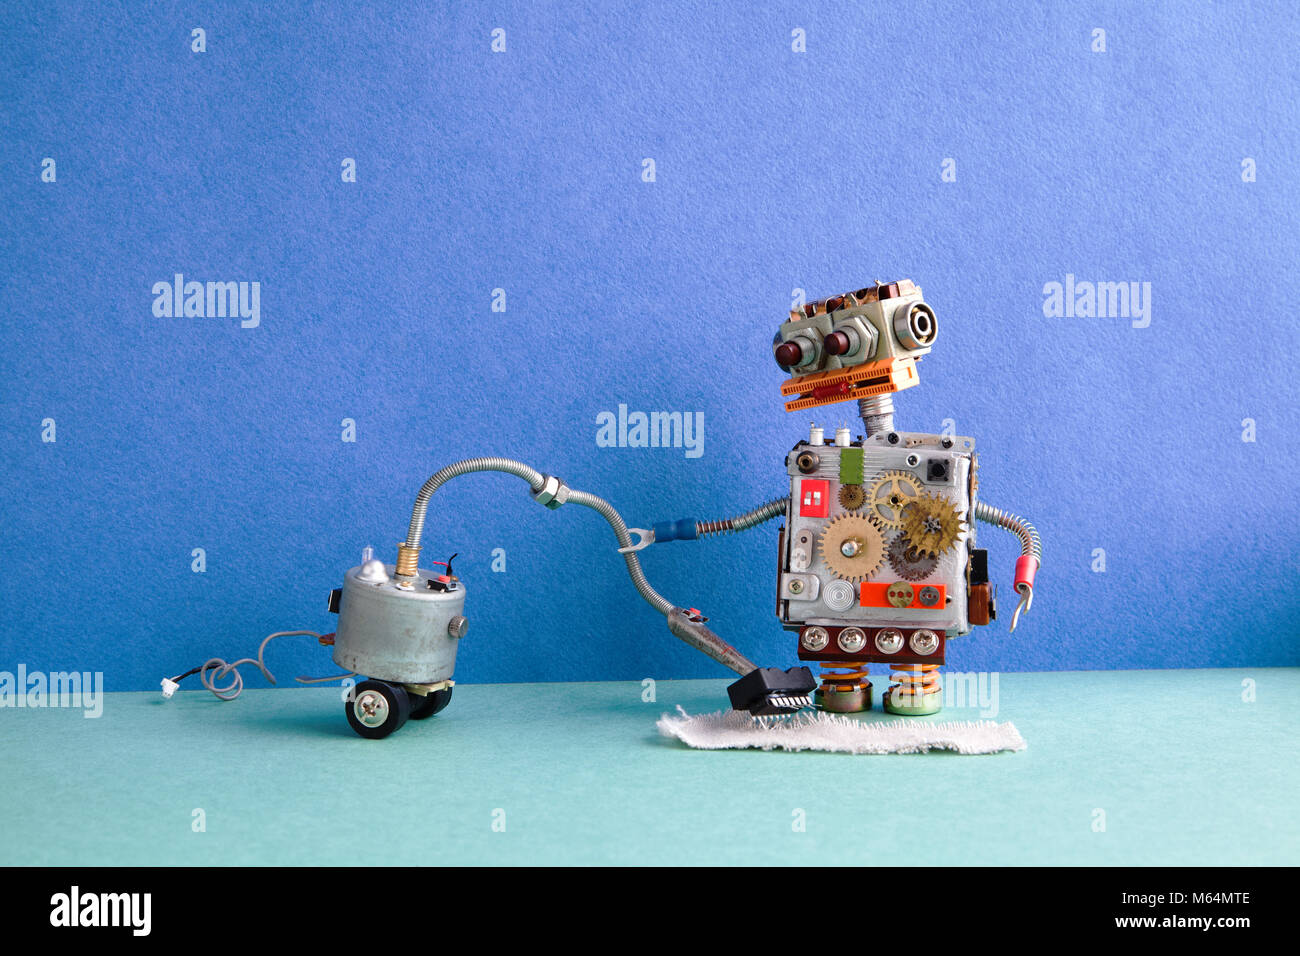 Robot Aspirateur nettoyeur. La conception créative de la machine de  nettoyage Nettoyage des jouets robotiques home, vert-de-chaussée mur  intérieur appartement bleu Photo Stock - Alamy